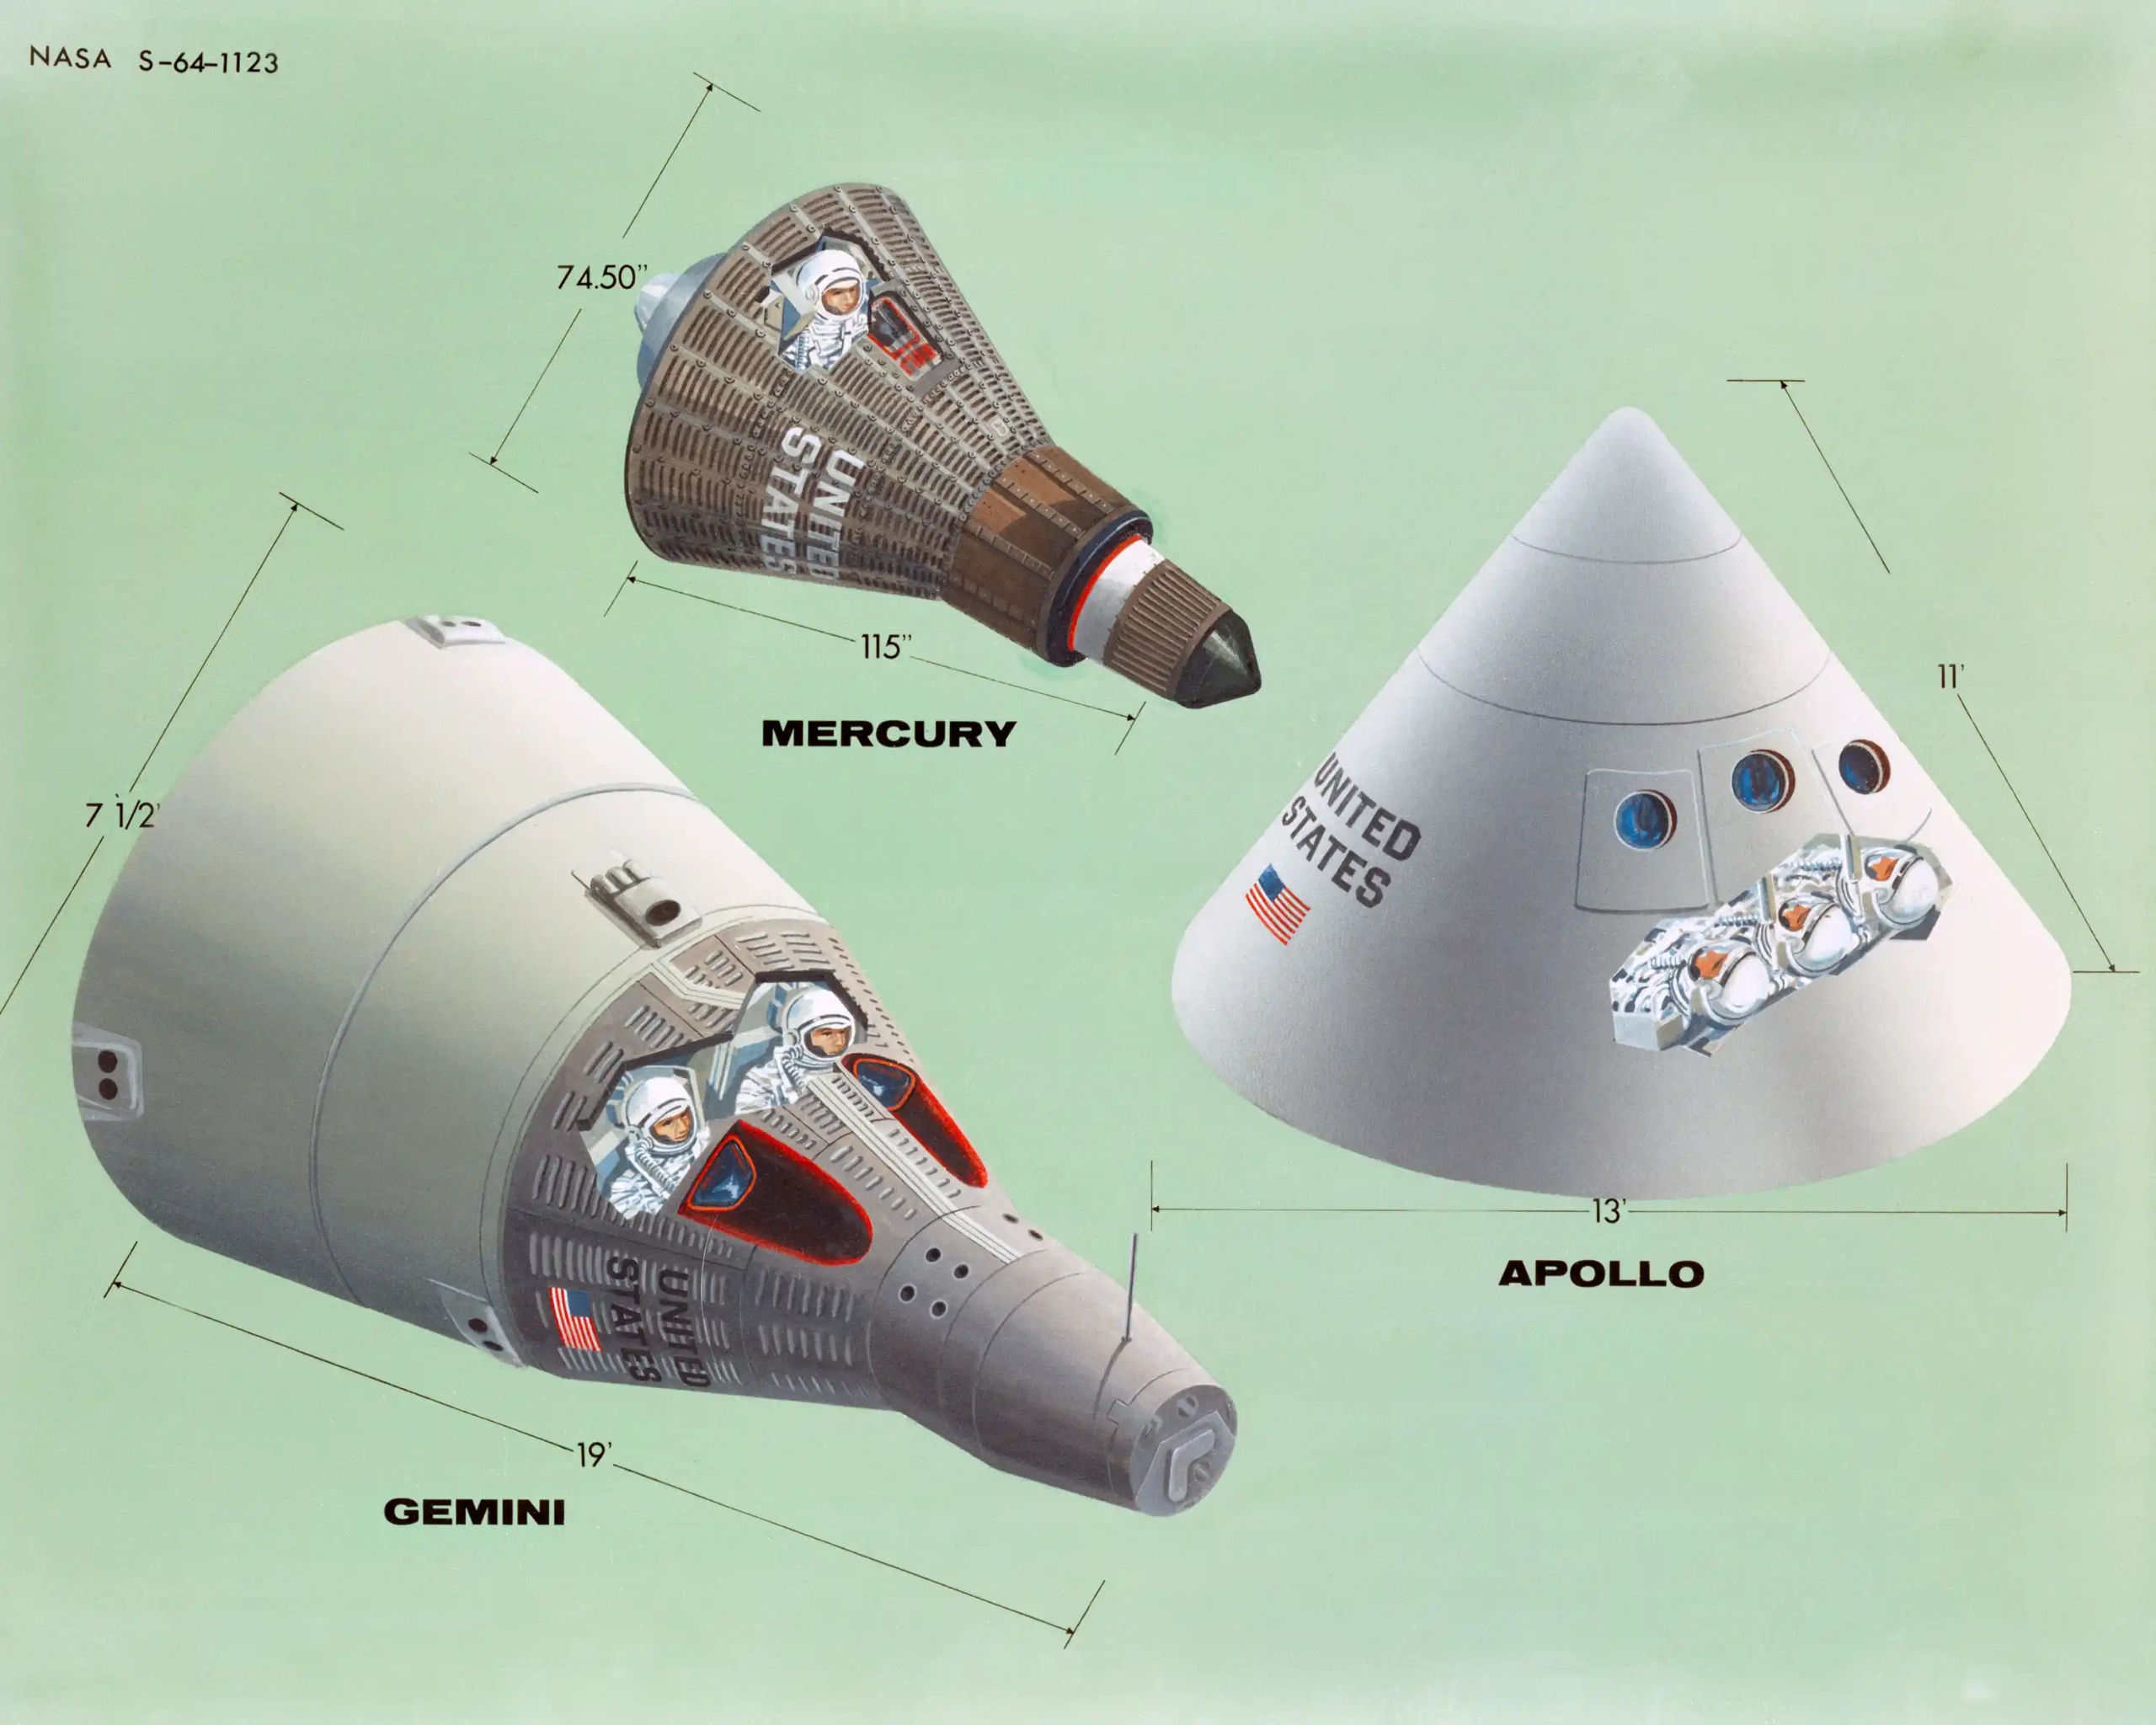 сравнение первых американских кораблей Mercury и Gemini с командным модулем корабля Apollo